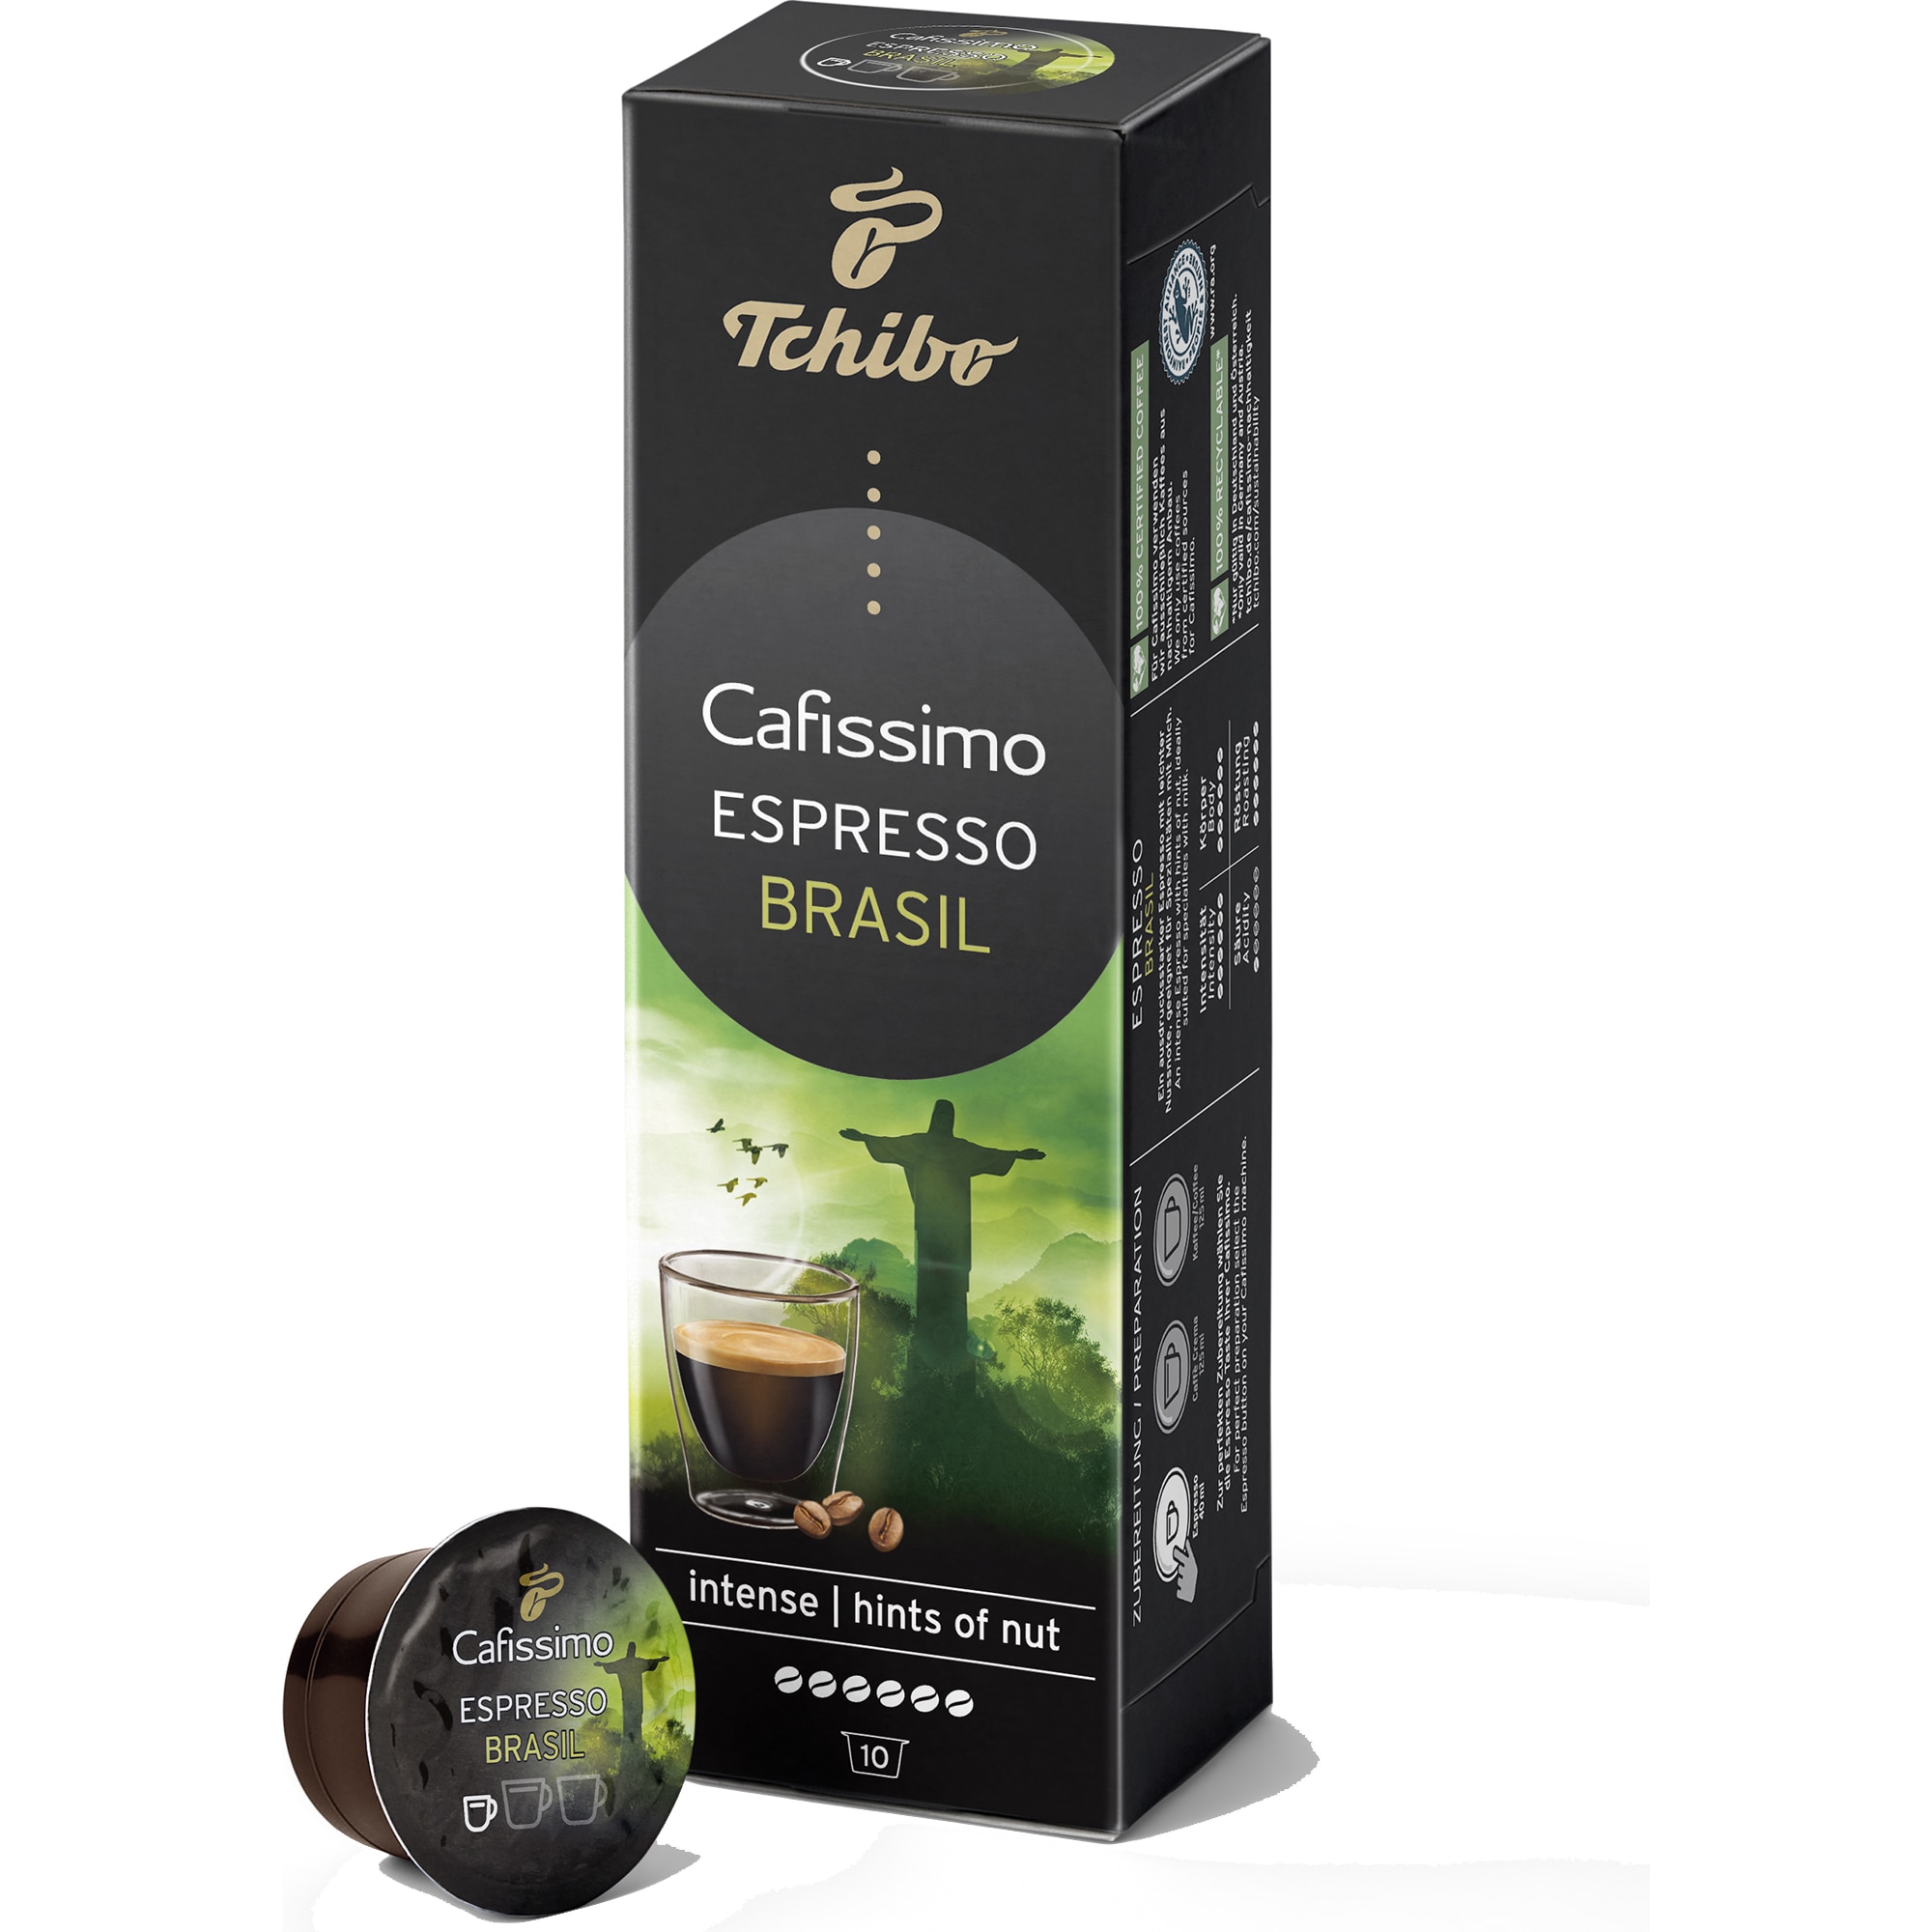 minimum domain Ambiguity Capsule Tchibo Cafissimo Espresso Brasil, 10 Capsule, 80 g - eMAG.ro